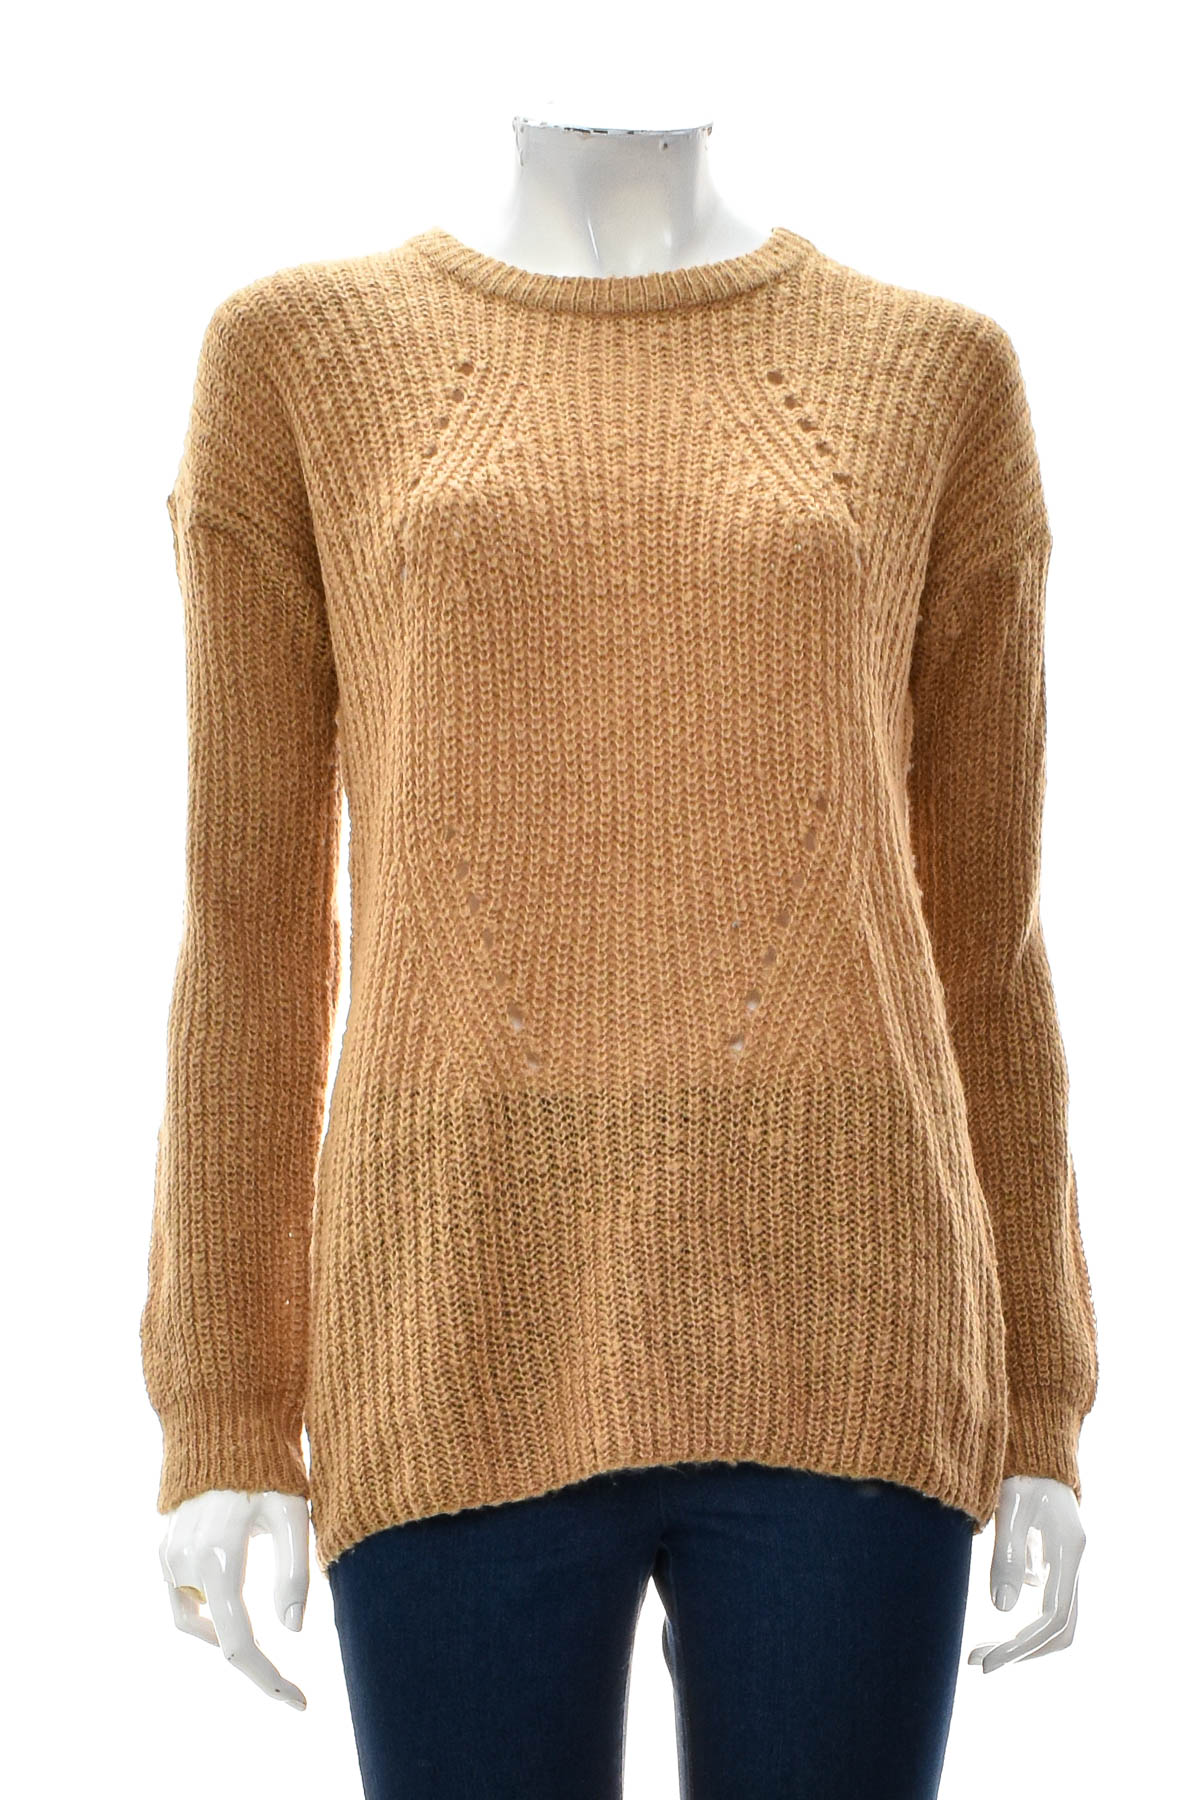 Women's sweater - Brave Soul - 0